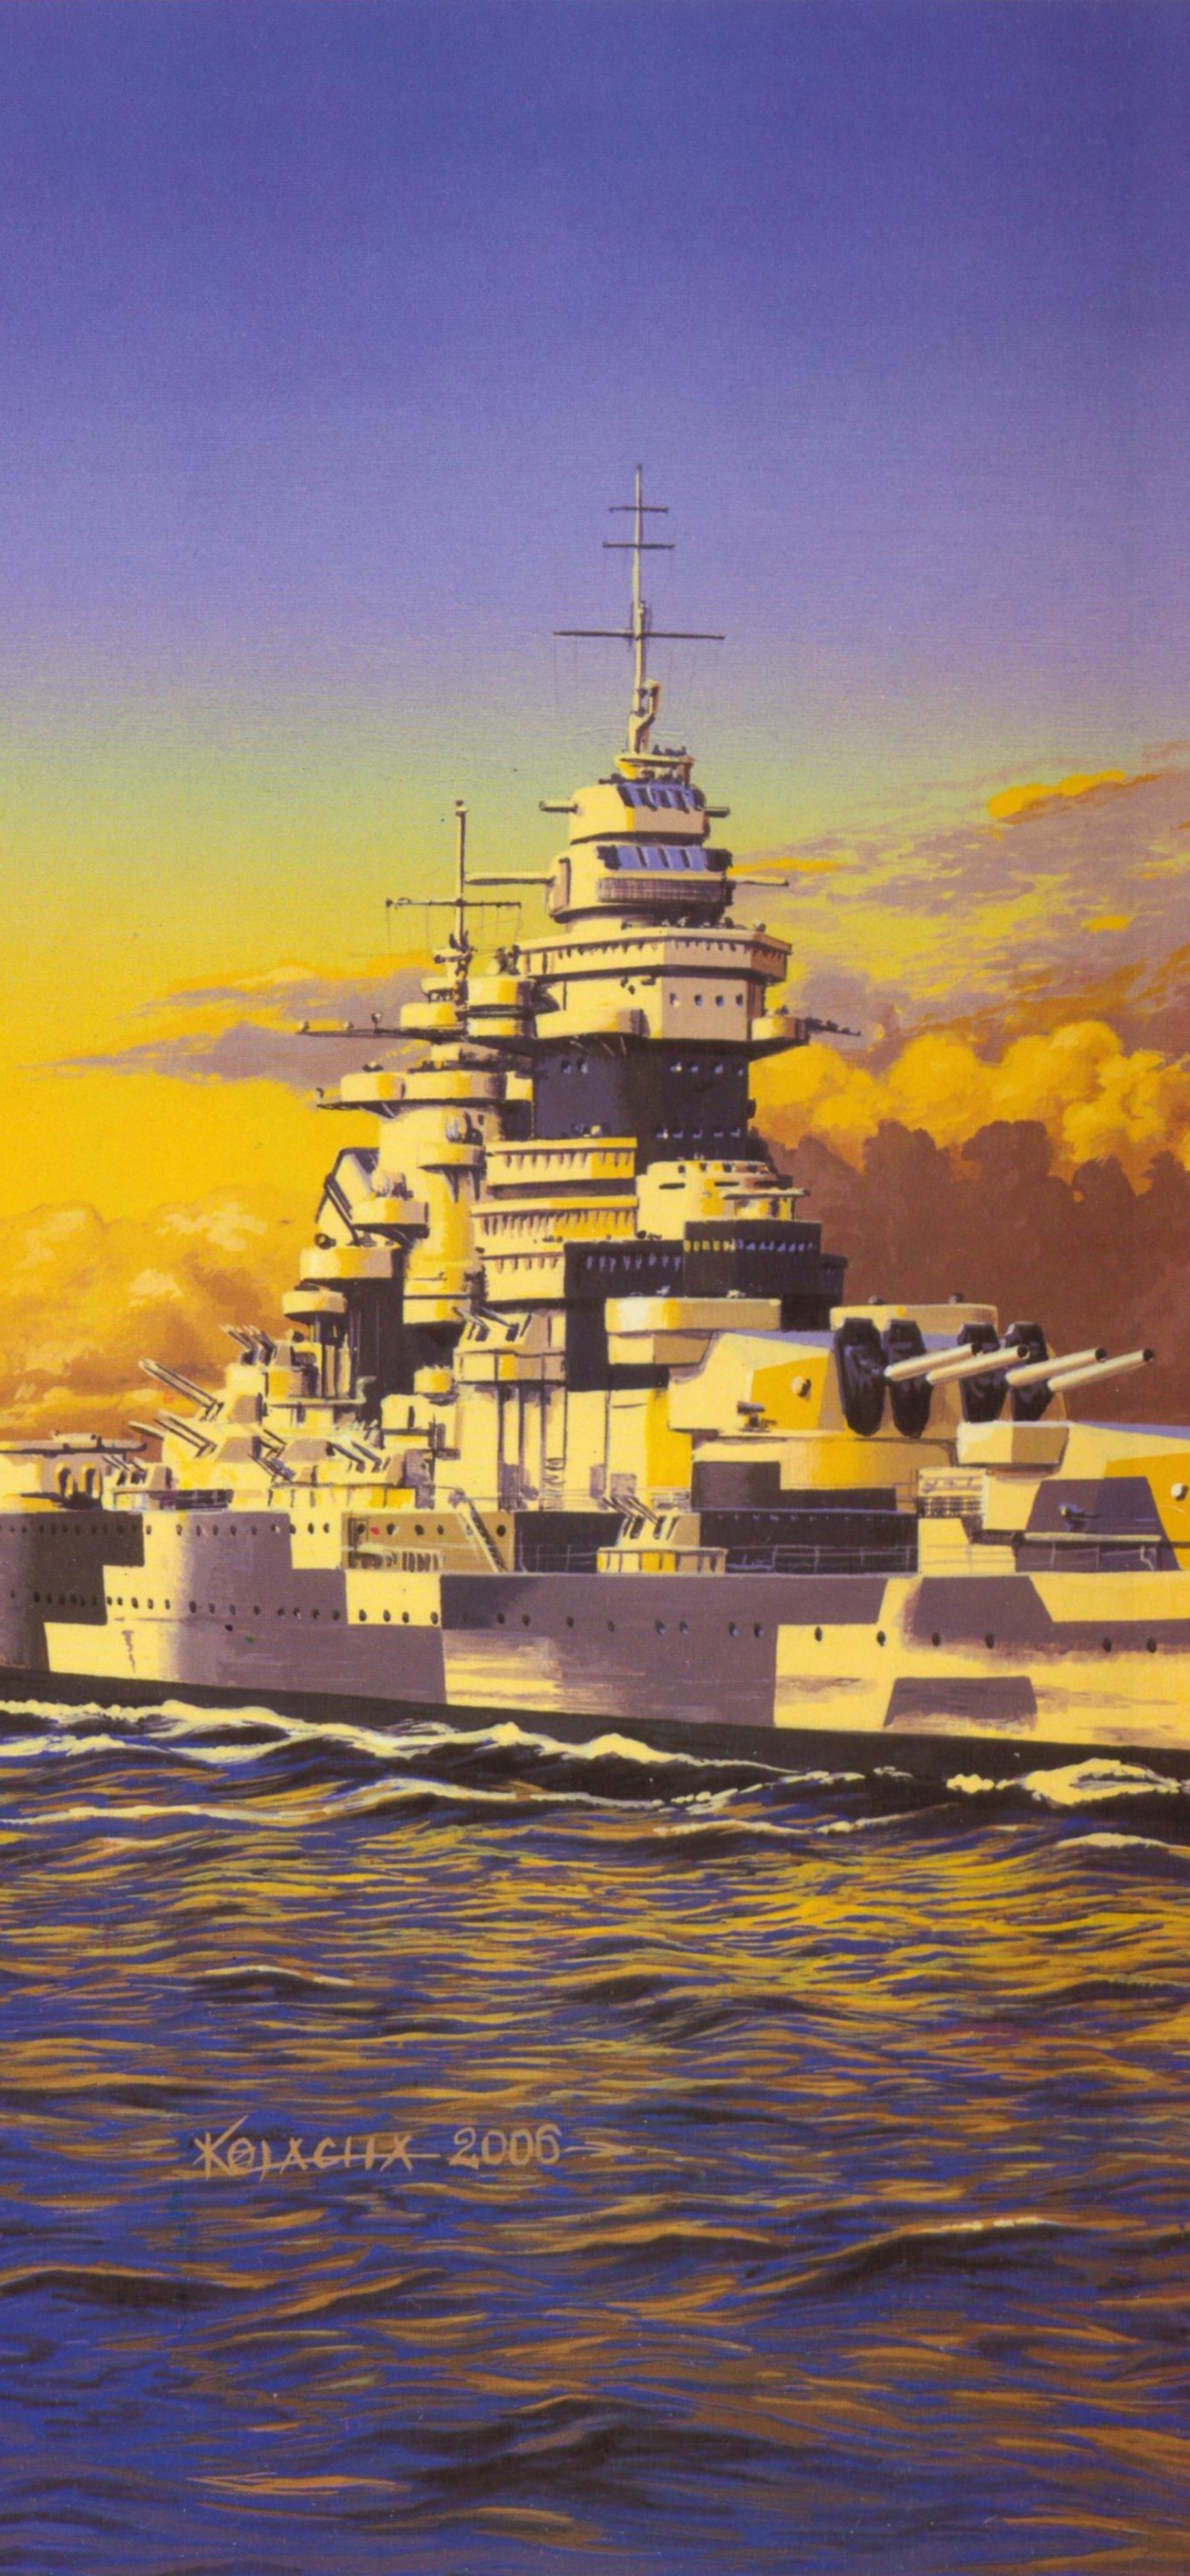 Japanische Schlachtschiff Yamato, Schlachtschiff, Kriegsschiff, Malerei, Kunst. Wallpaper in 1242x2688 Resolution